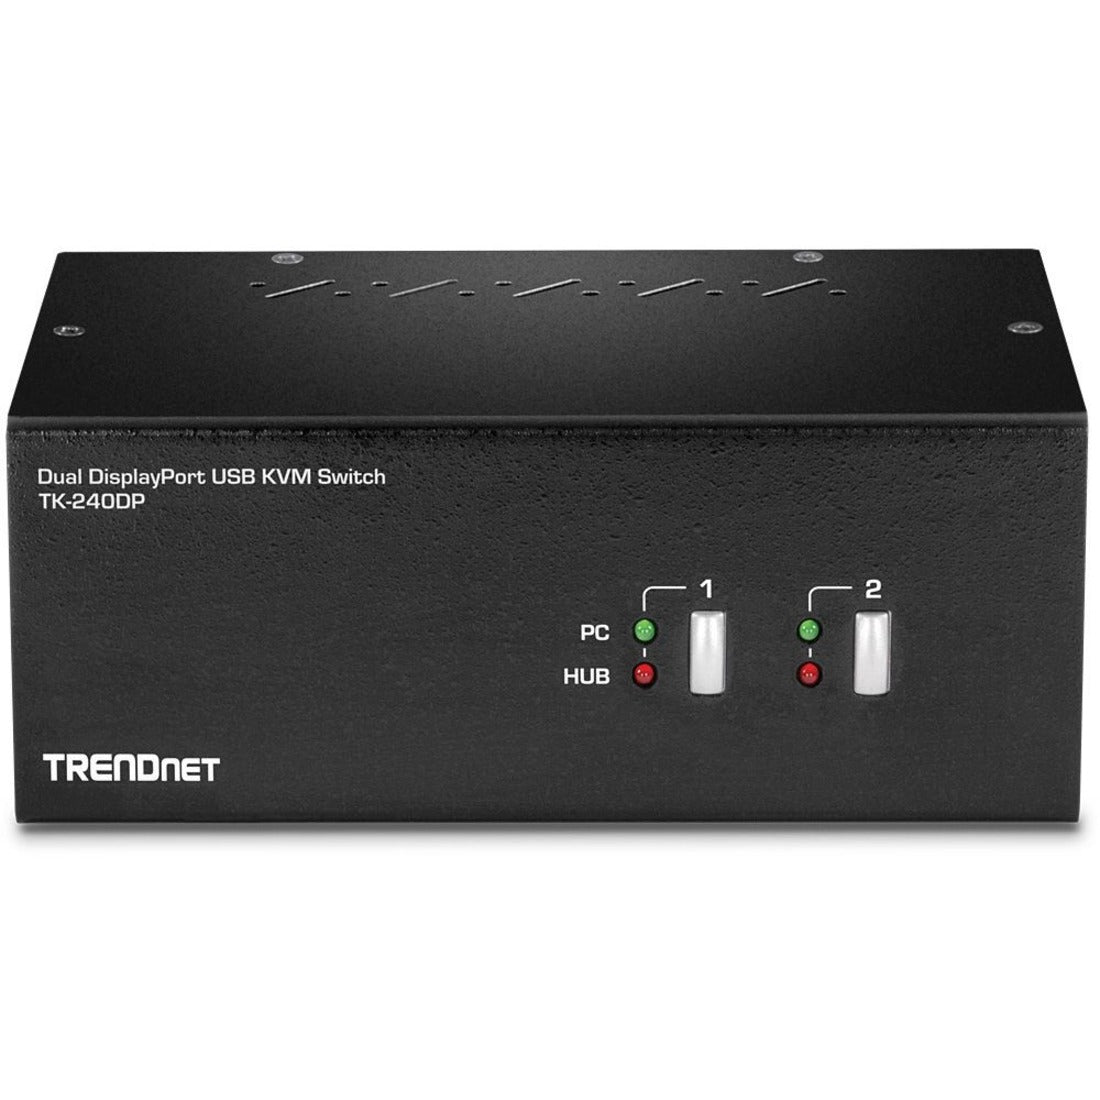 TRENDnet TK-240DP 2-Port Dual Monitor DisplayPort KVM Switch 3840 x 2160 Resolution TAA Compliant  TRENDnet TK-240DP 2-Port Dual Monitor DisplayPort KVM Switch Risoluzione 3840 x 2160 Conforme a TAA